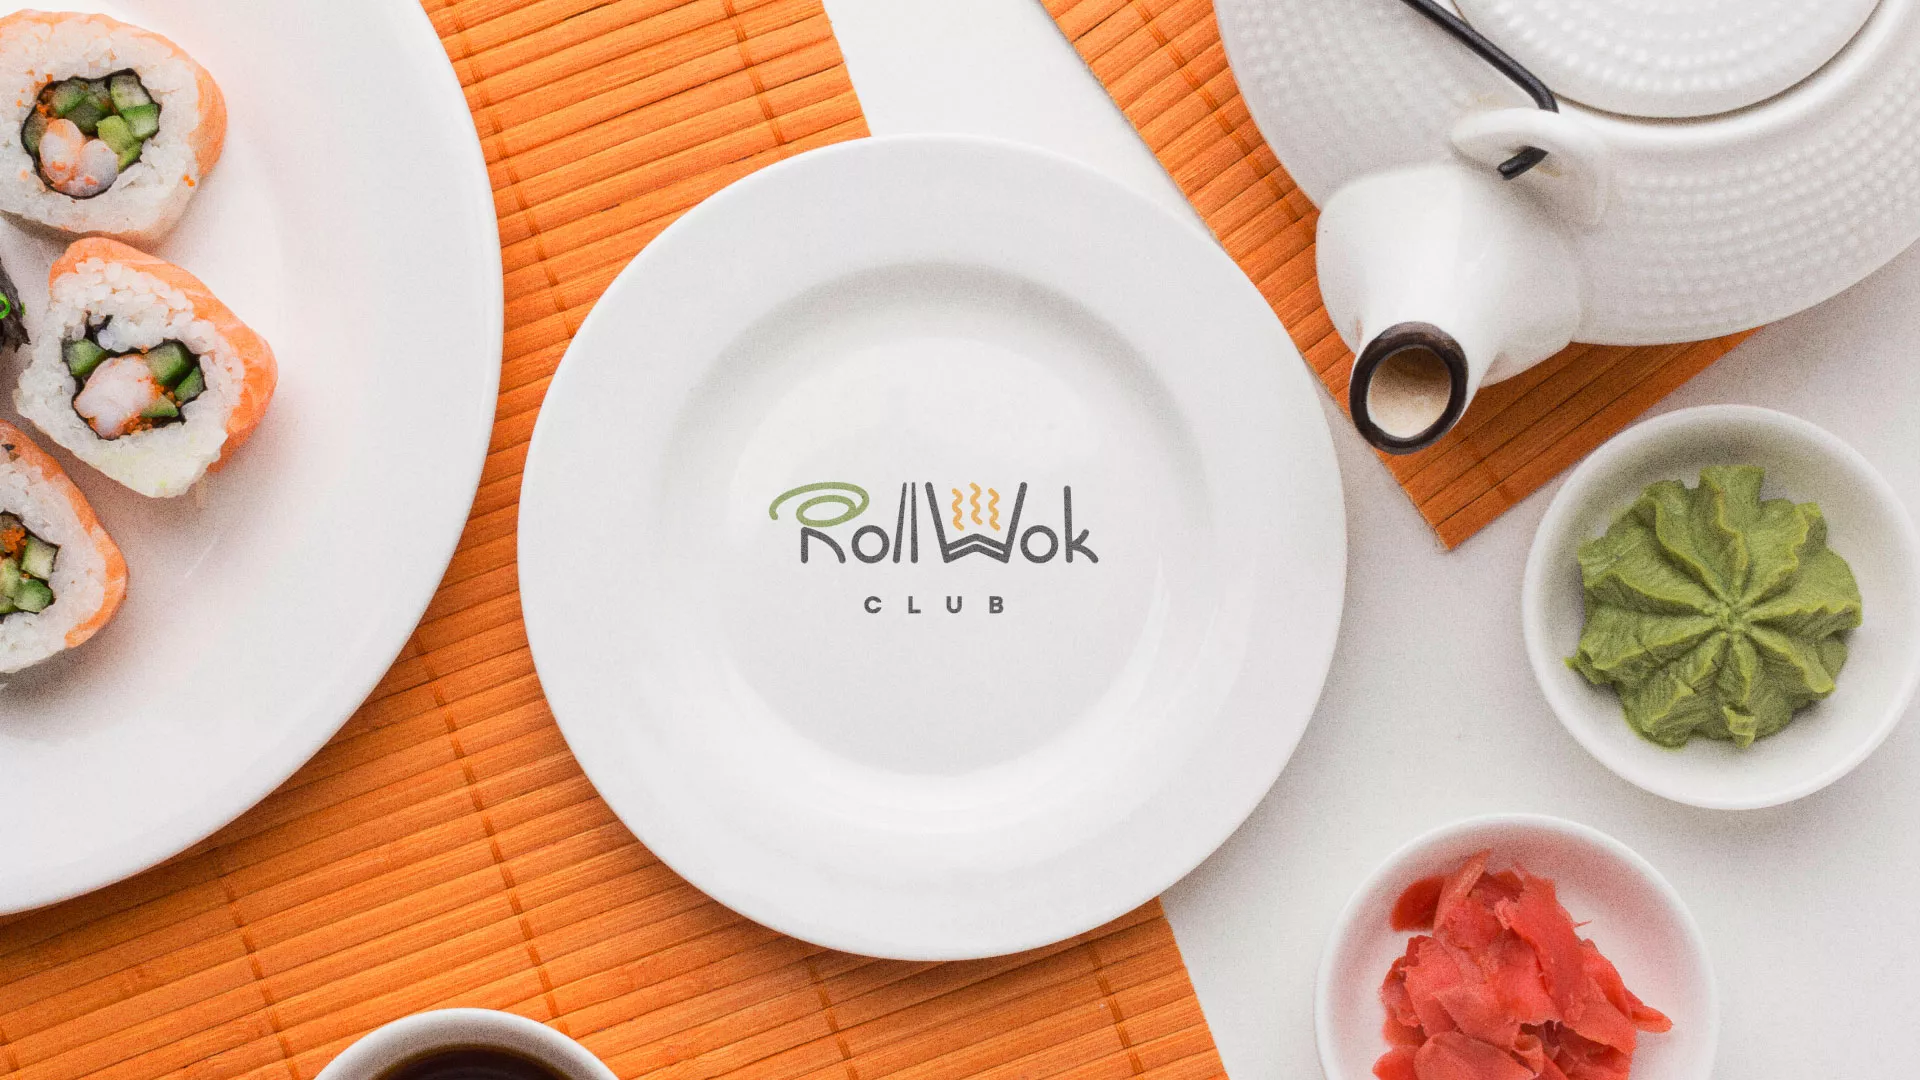 Разработка логотипа и фирменного стиля суши-бара «Roll Wok Club» в Демидове